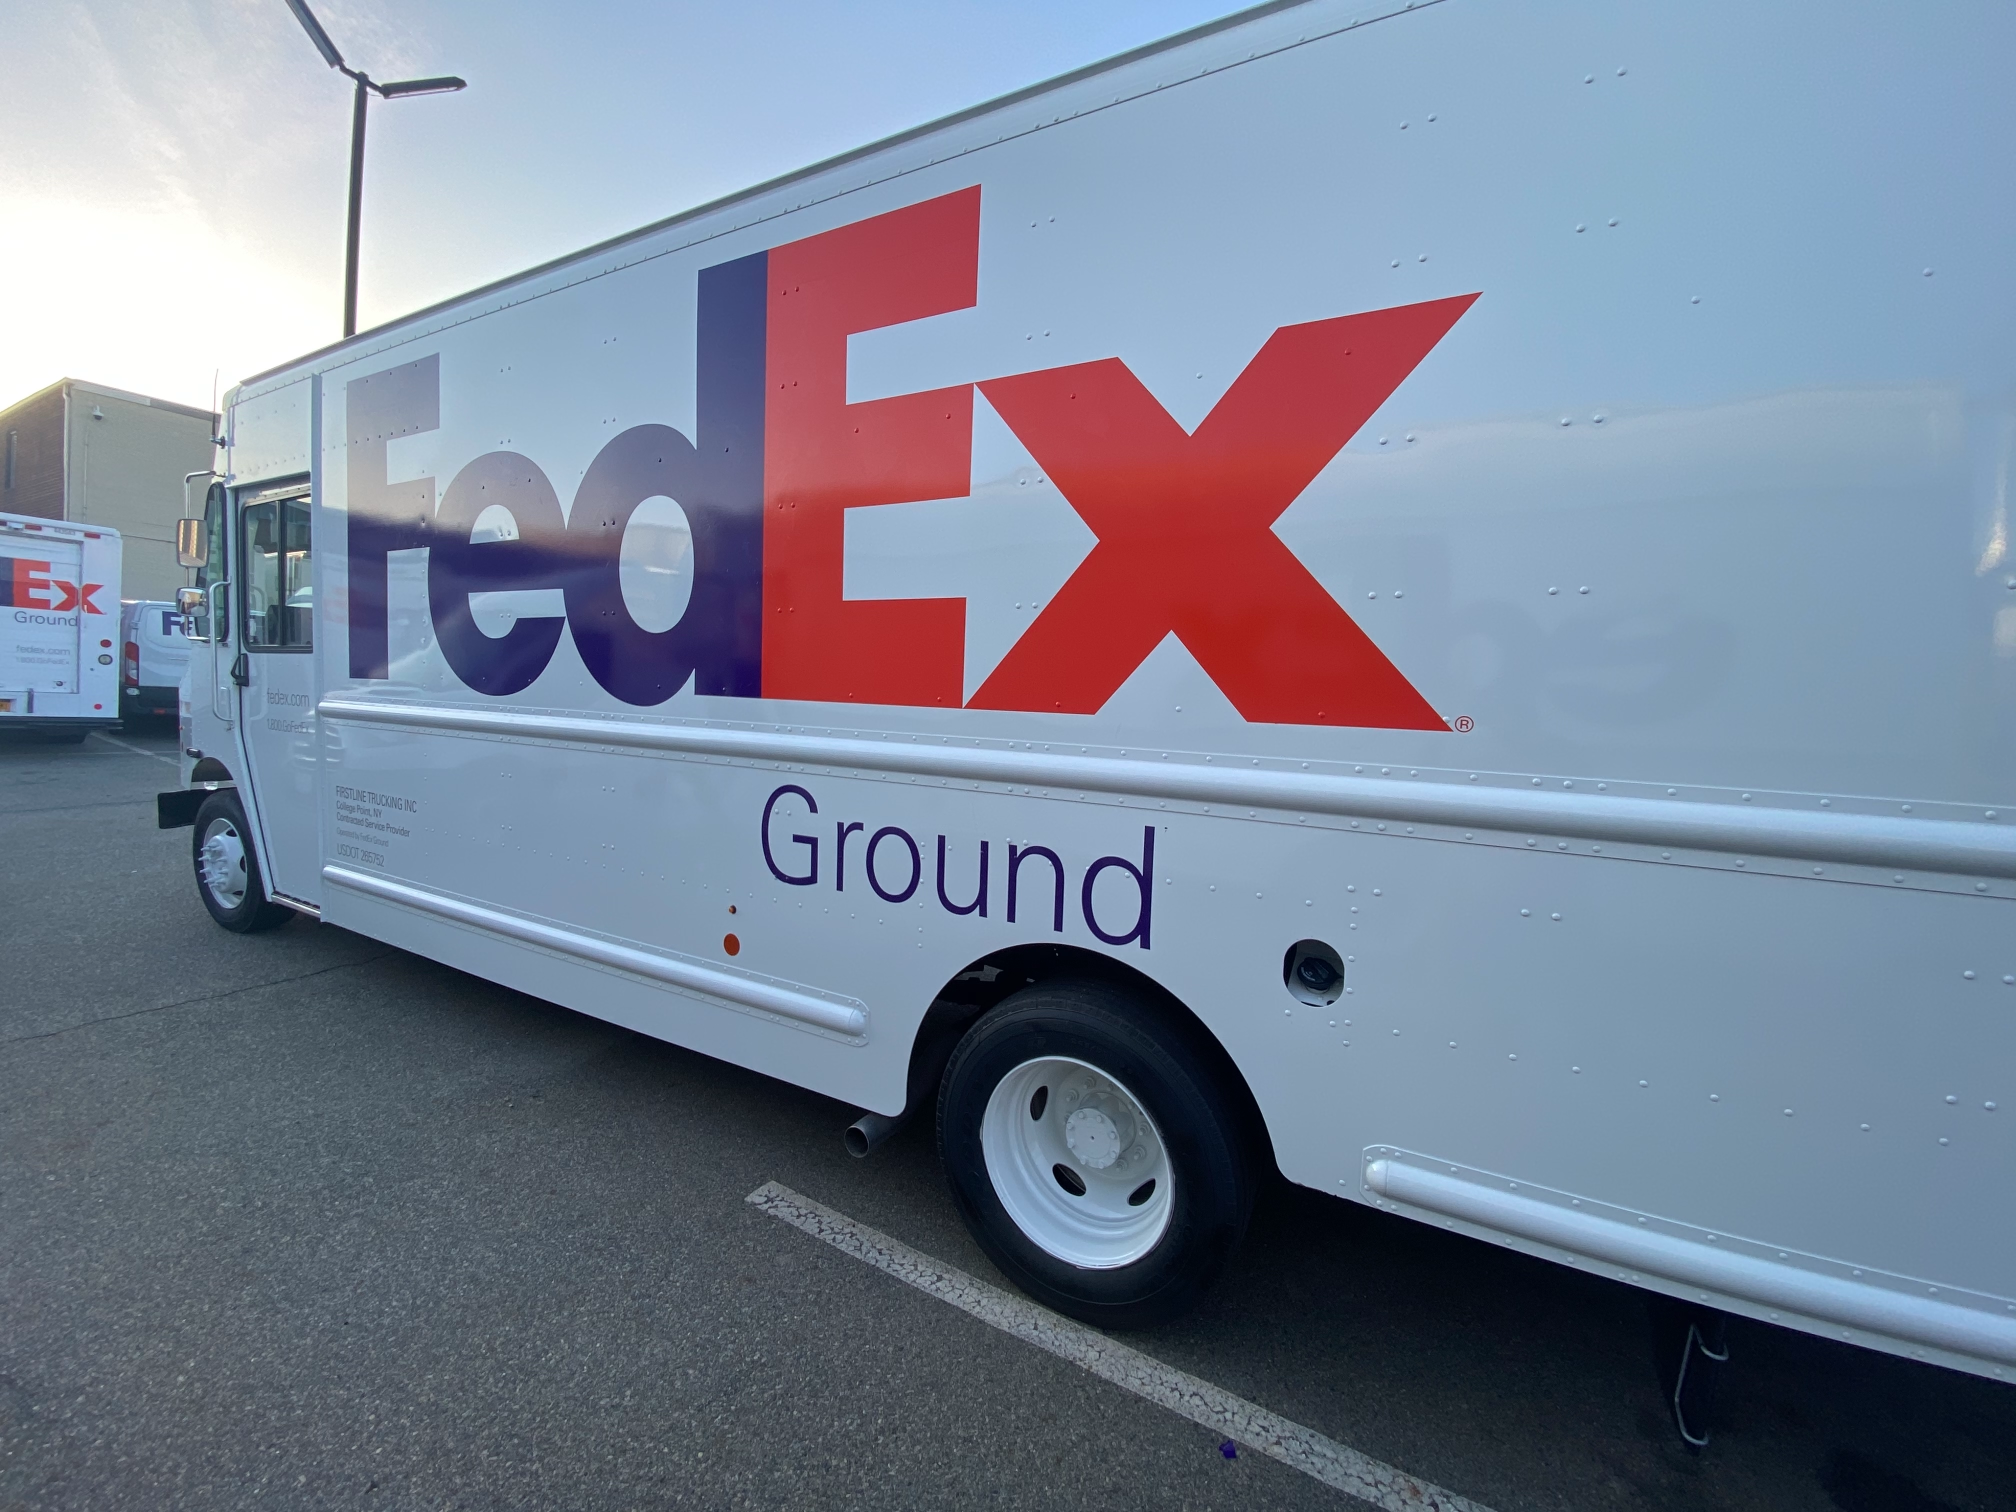 Trusted Authorized FedEx Vendor